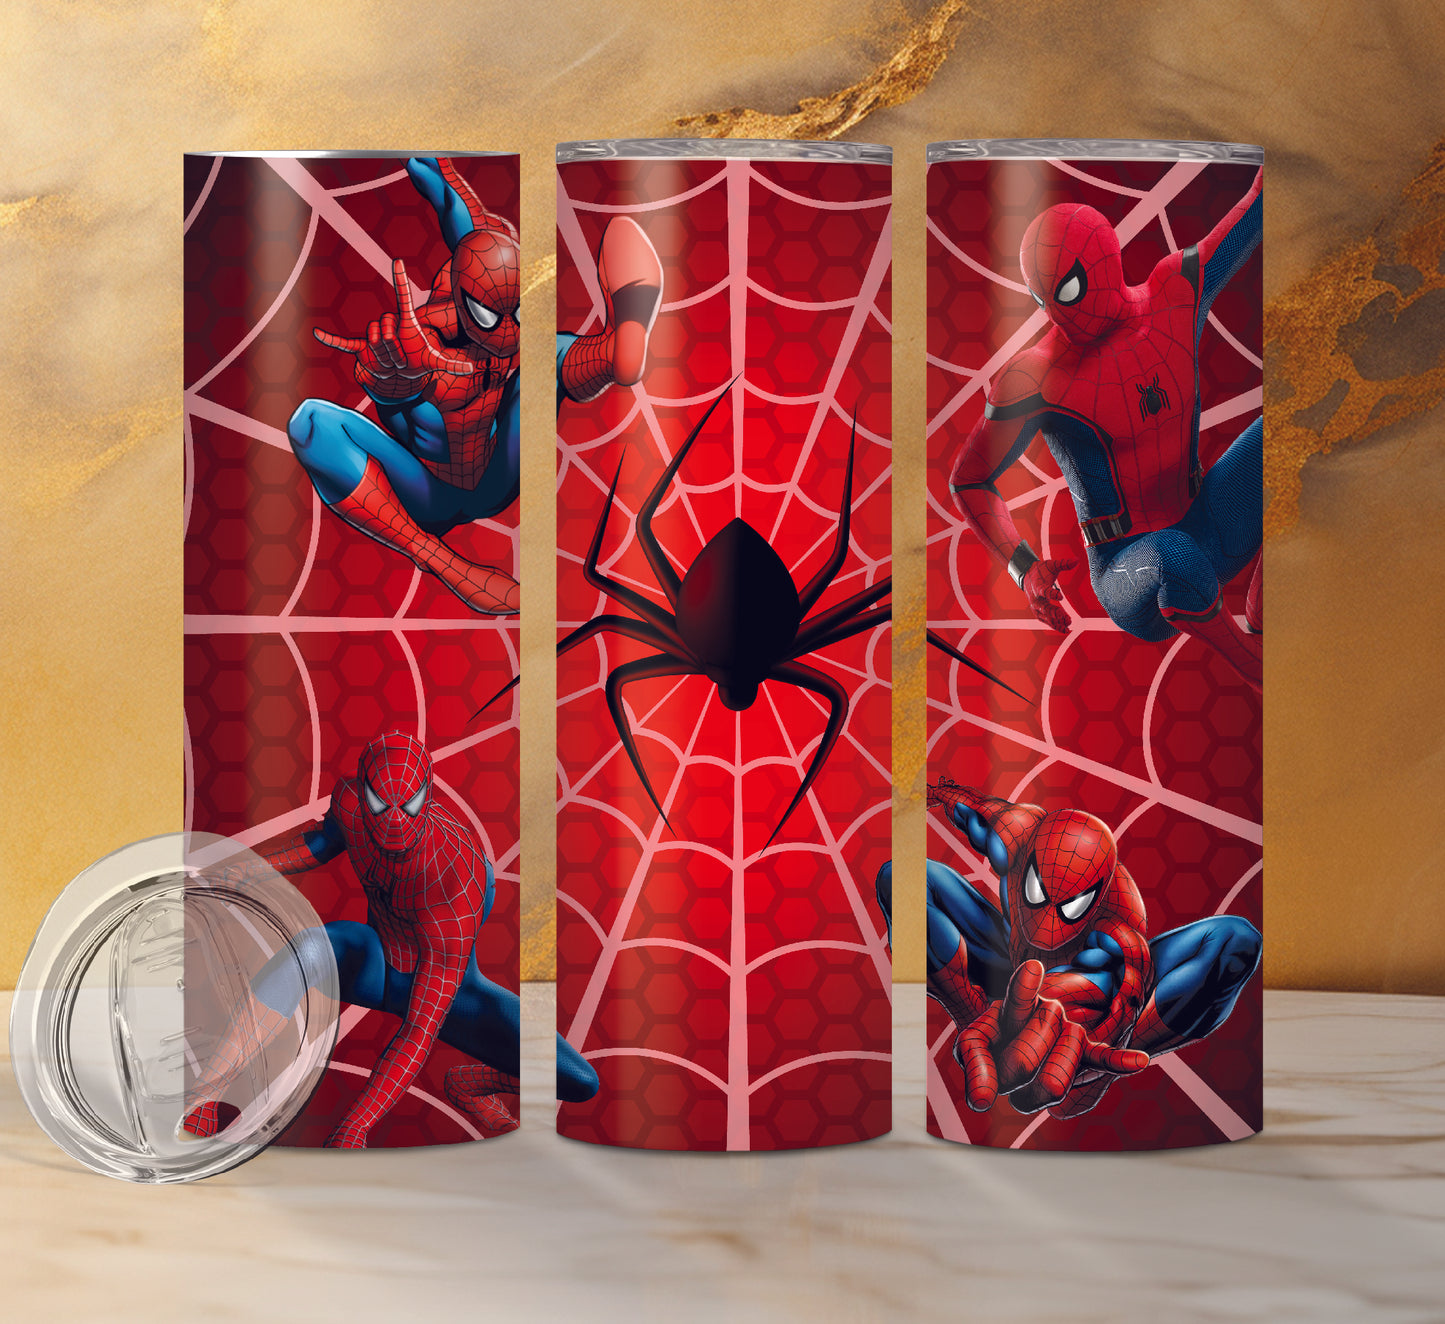 Spiderman Drink Tumblers, 7 Designs